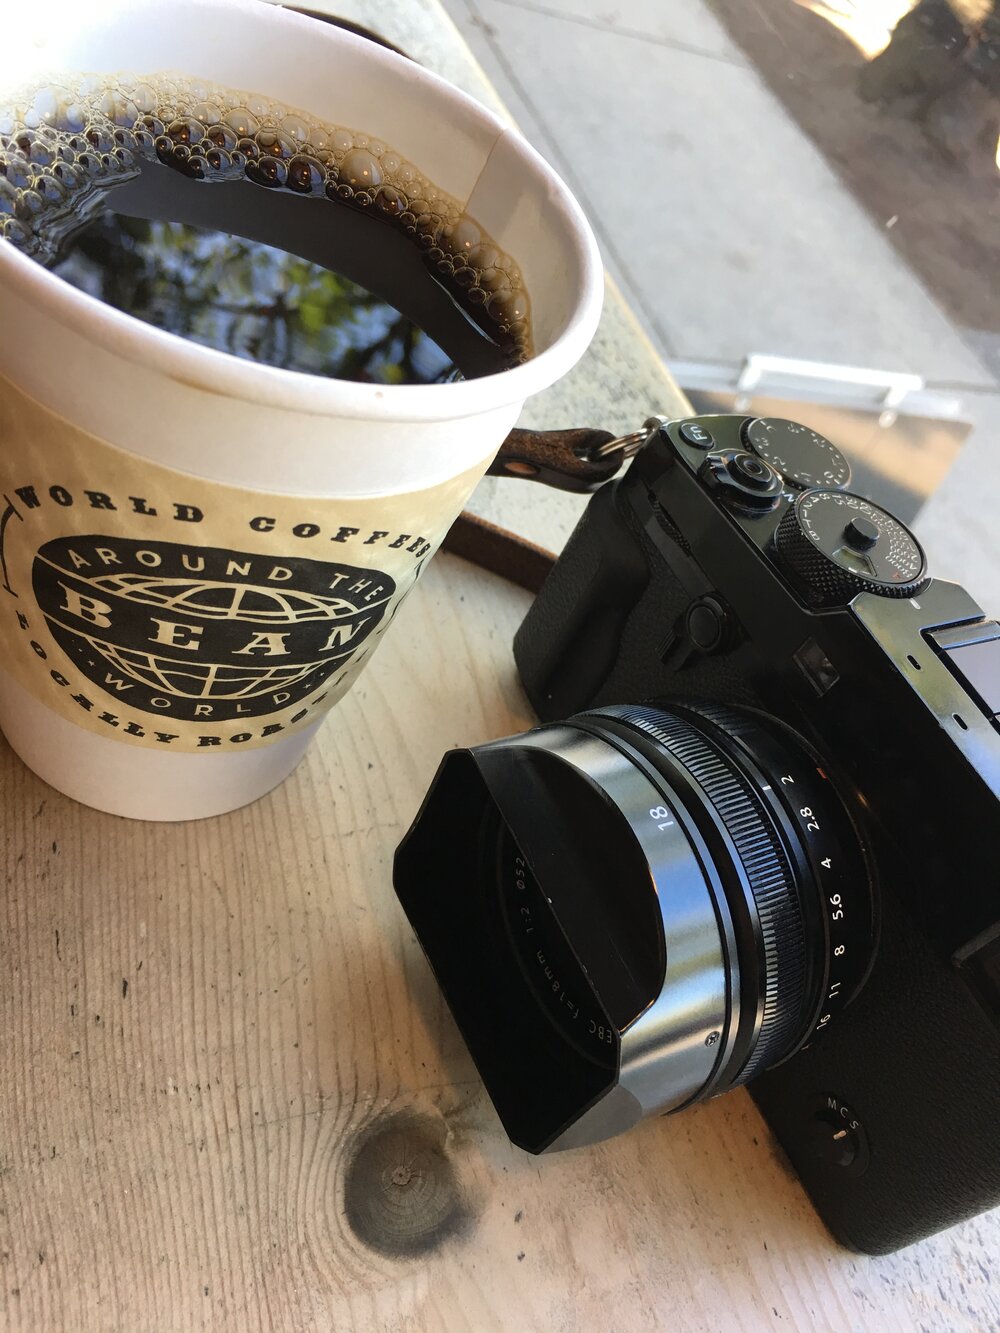 Scheiden Proberen Uitwerpselen Fujifilm XF 18mm f/2 R Review | 5050 Travelog